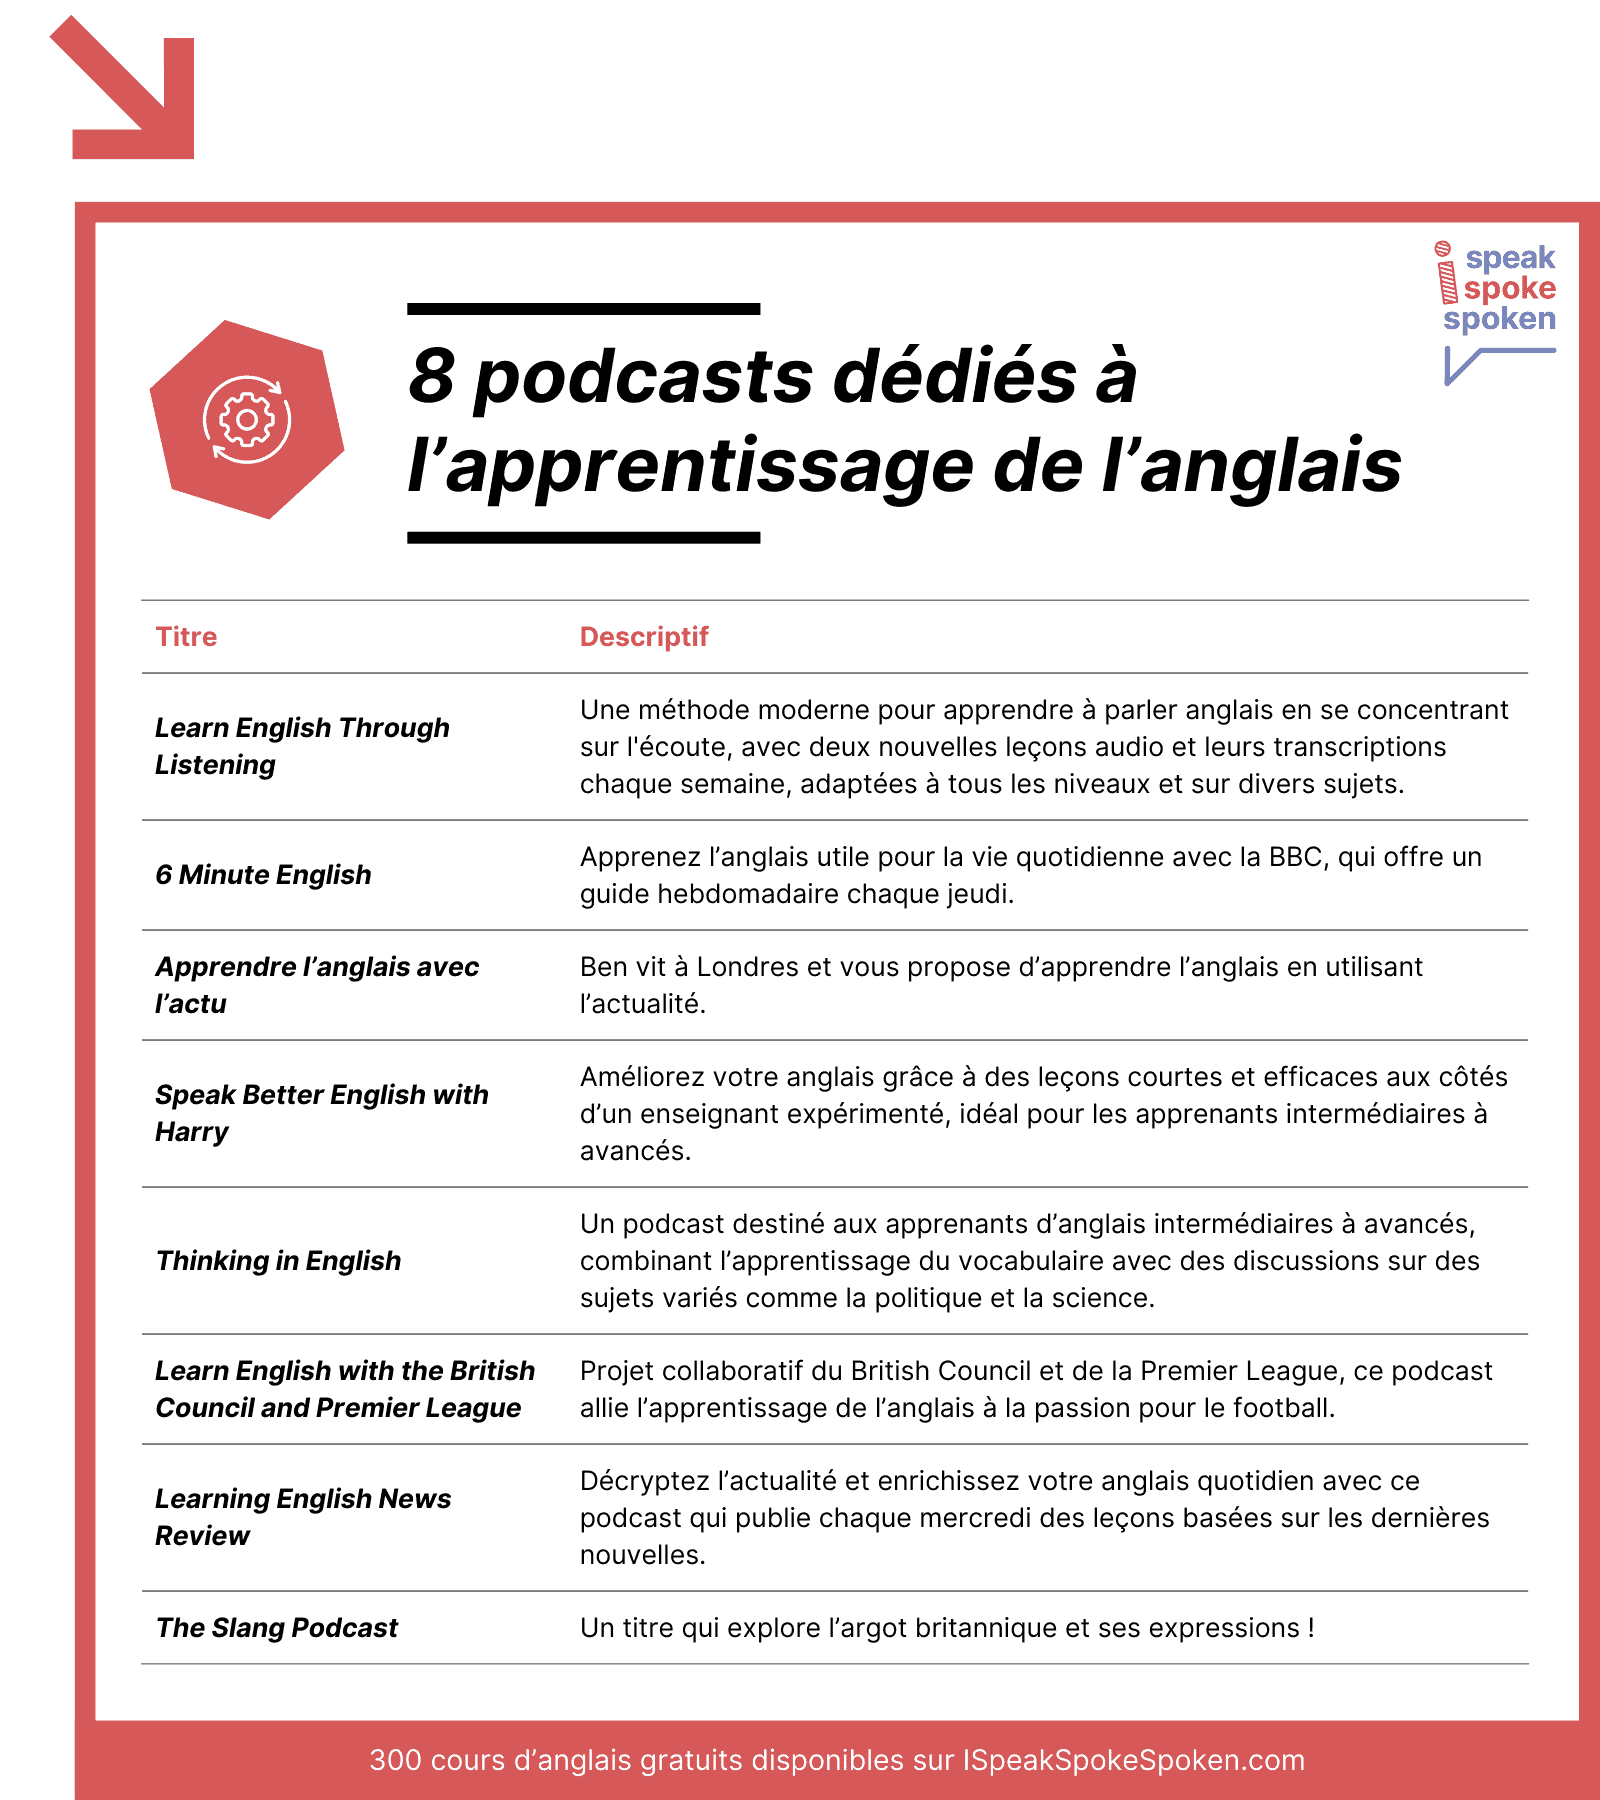 8 podcasts dédiés à l’apprentissage de l’anglais